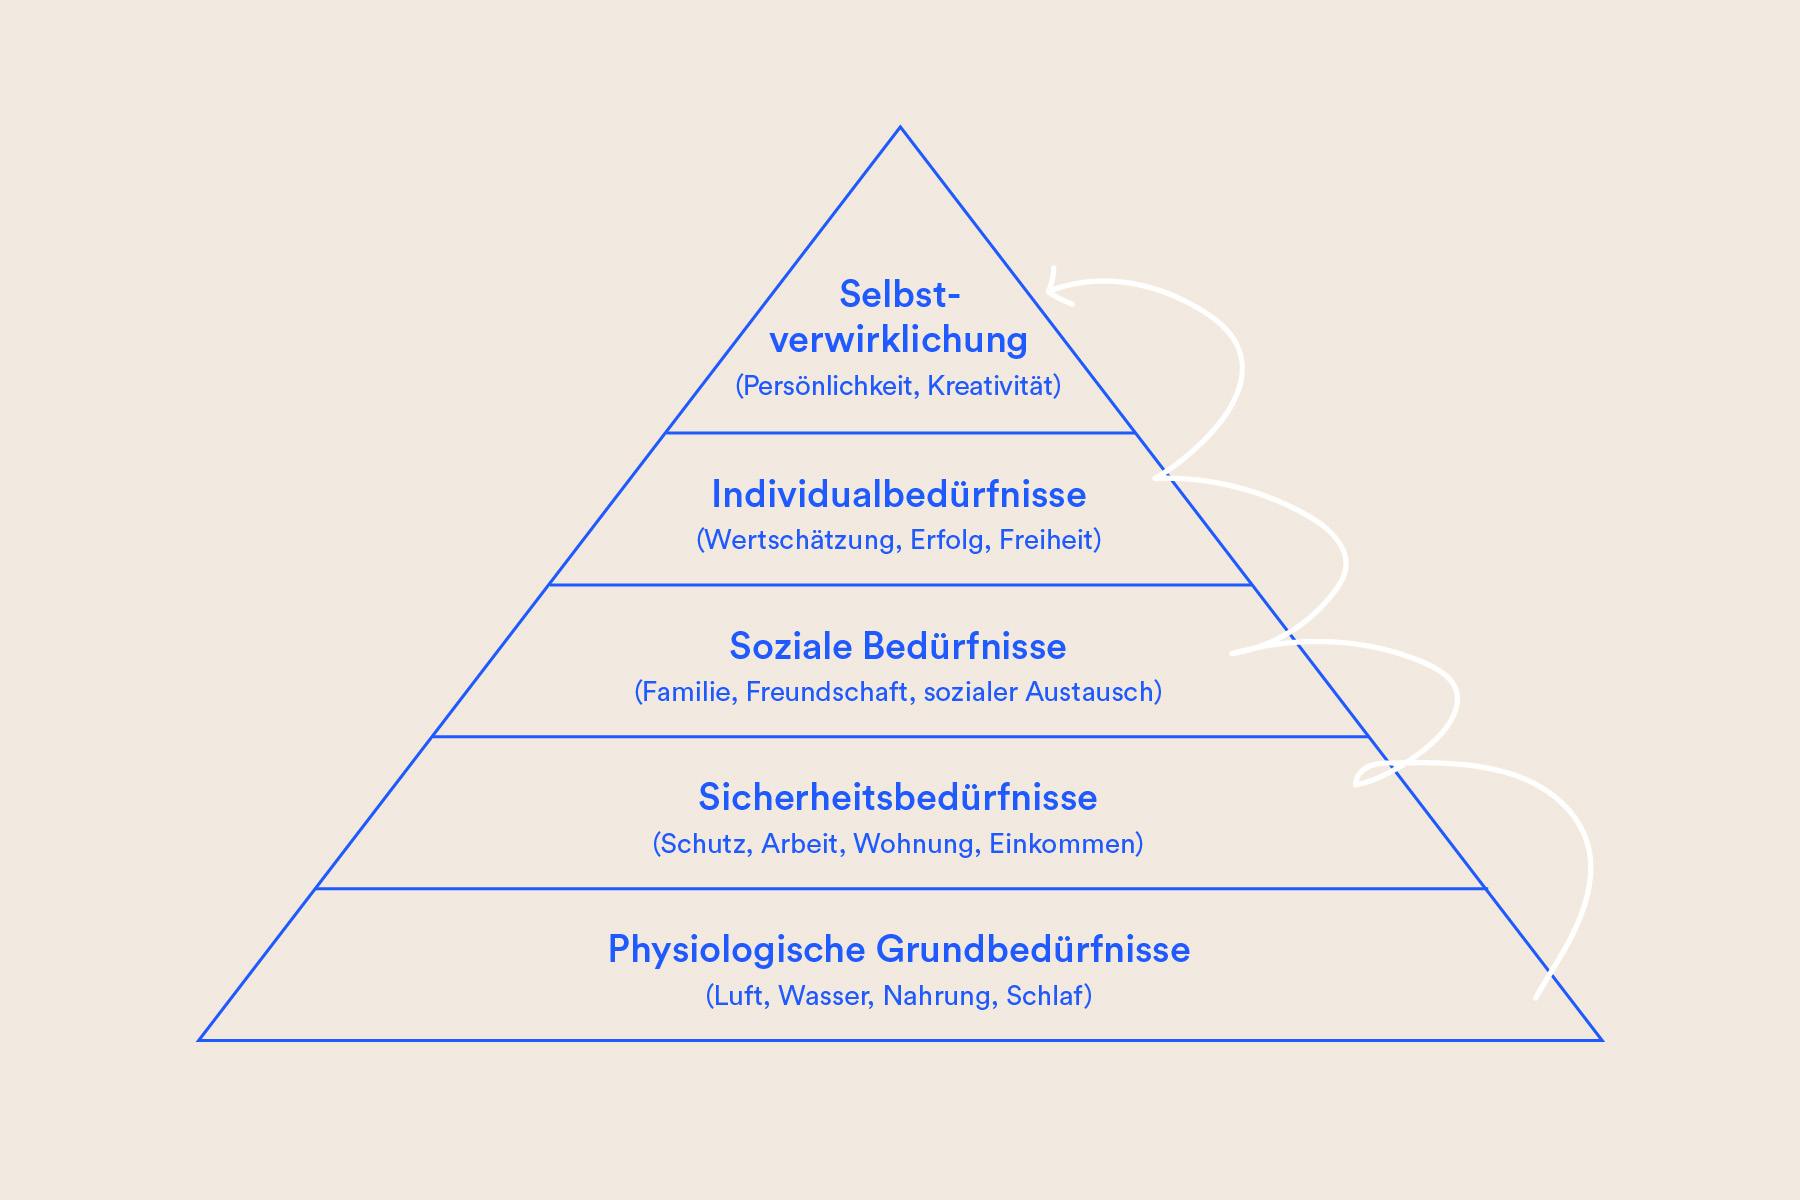 Maslows Bedürfnispyramide mit hierarchischem Aufbau